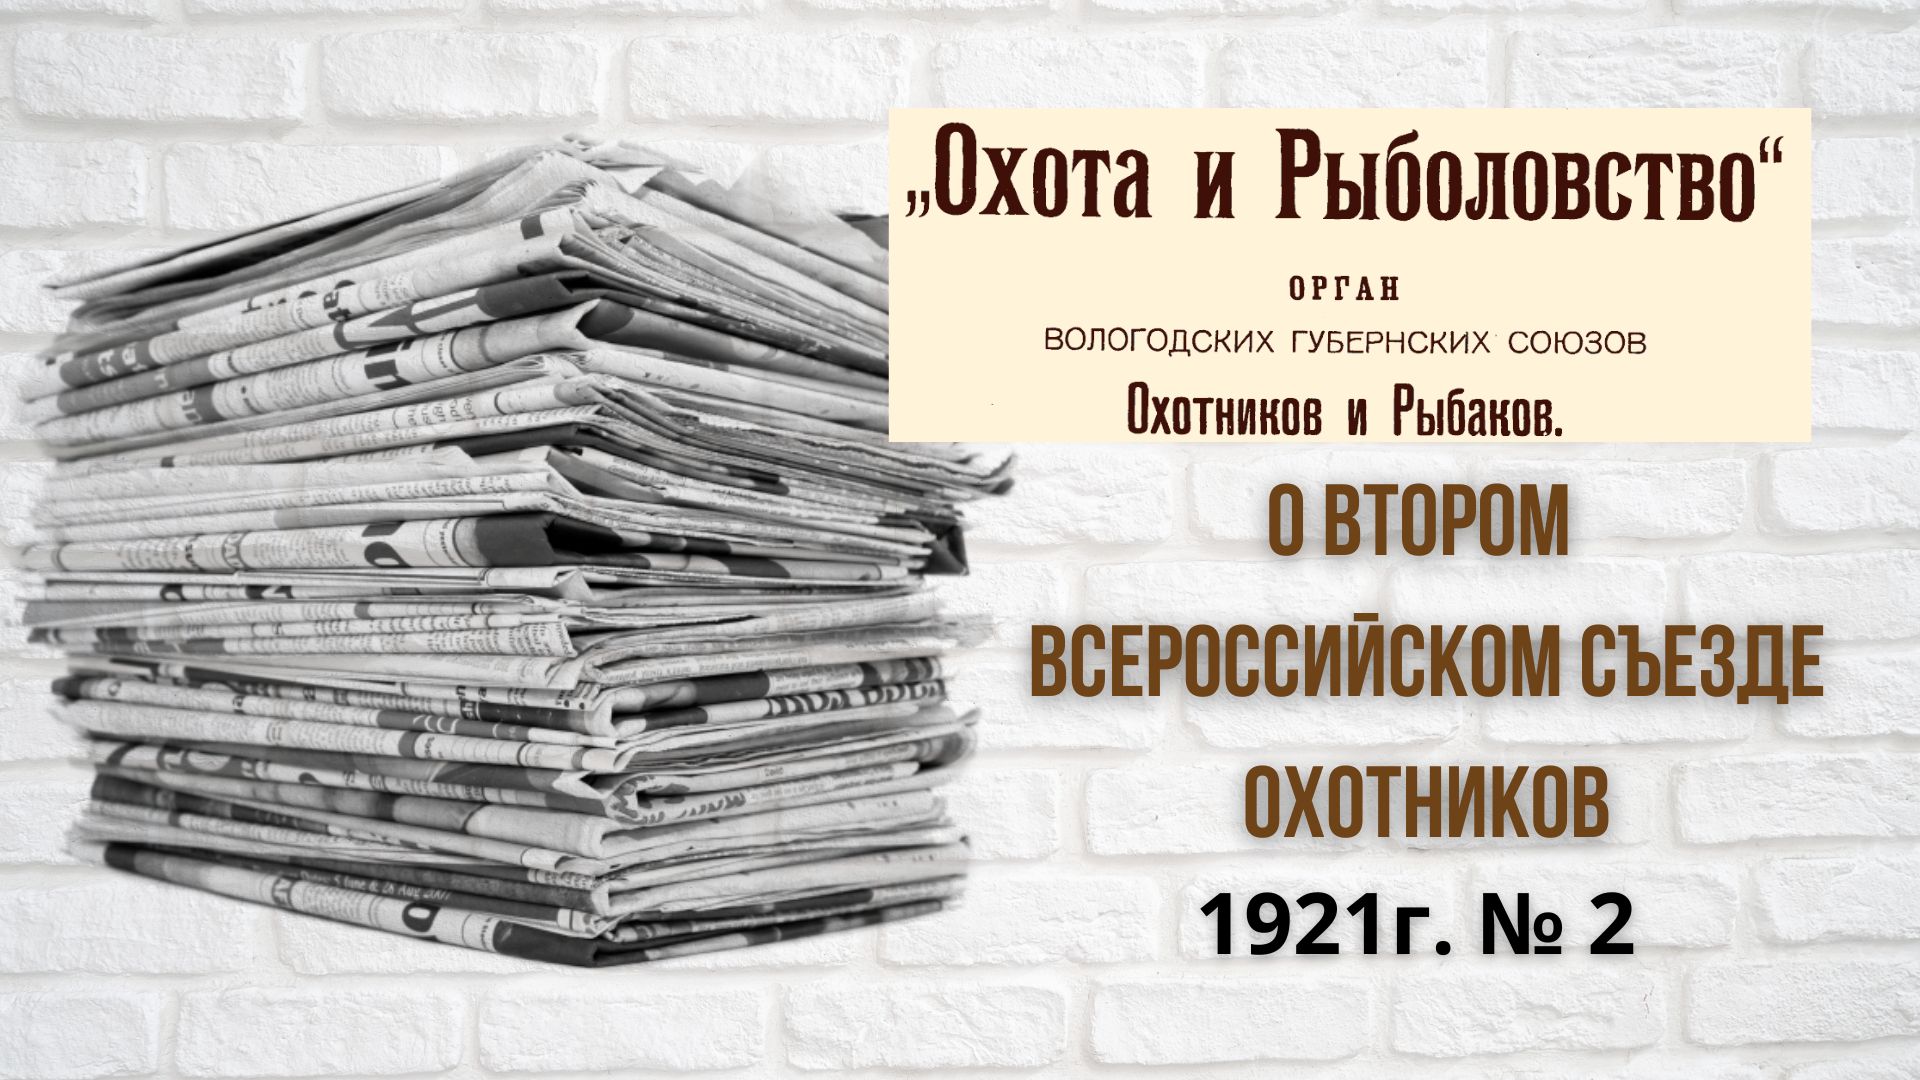 1921г. заметка "О втором Всероссийском Съезде охотников."